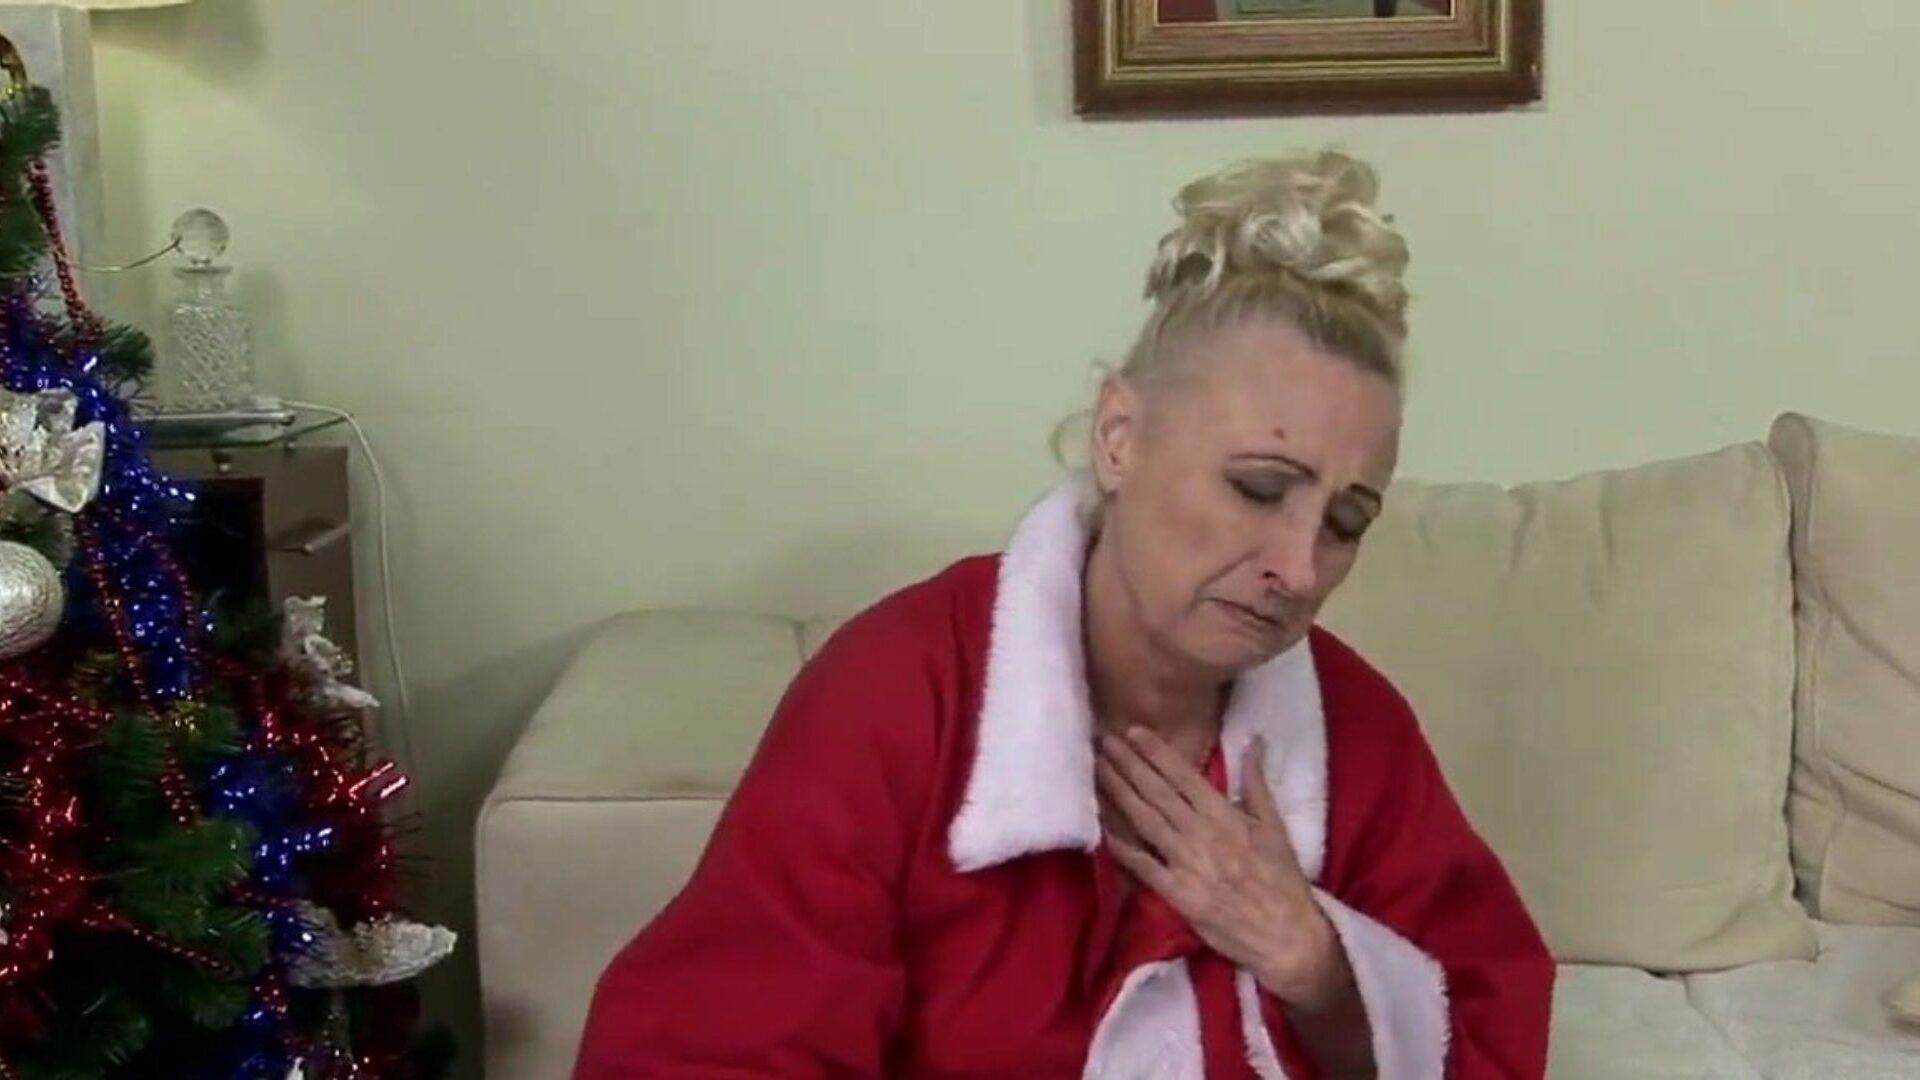 la nonna non vuole trascorrere il Natale da sola: porno gratis e8 guarda la nonna non vuole trascorrere il Natale da sola scena del film su xhamster - l'archivio definitivo di video gratuiti di nonne e nonne gratis per tutti